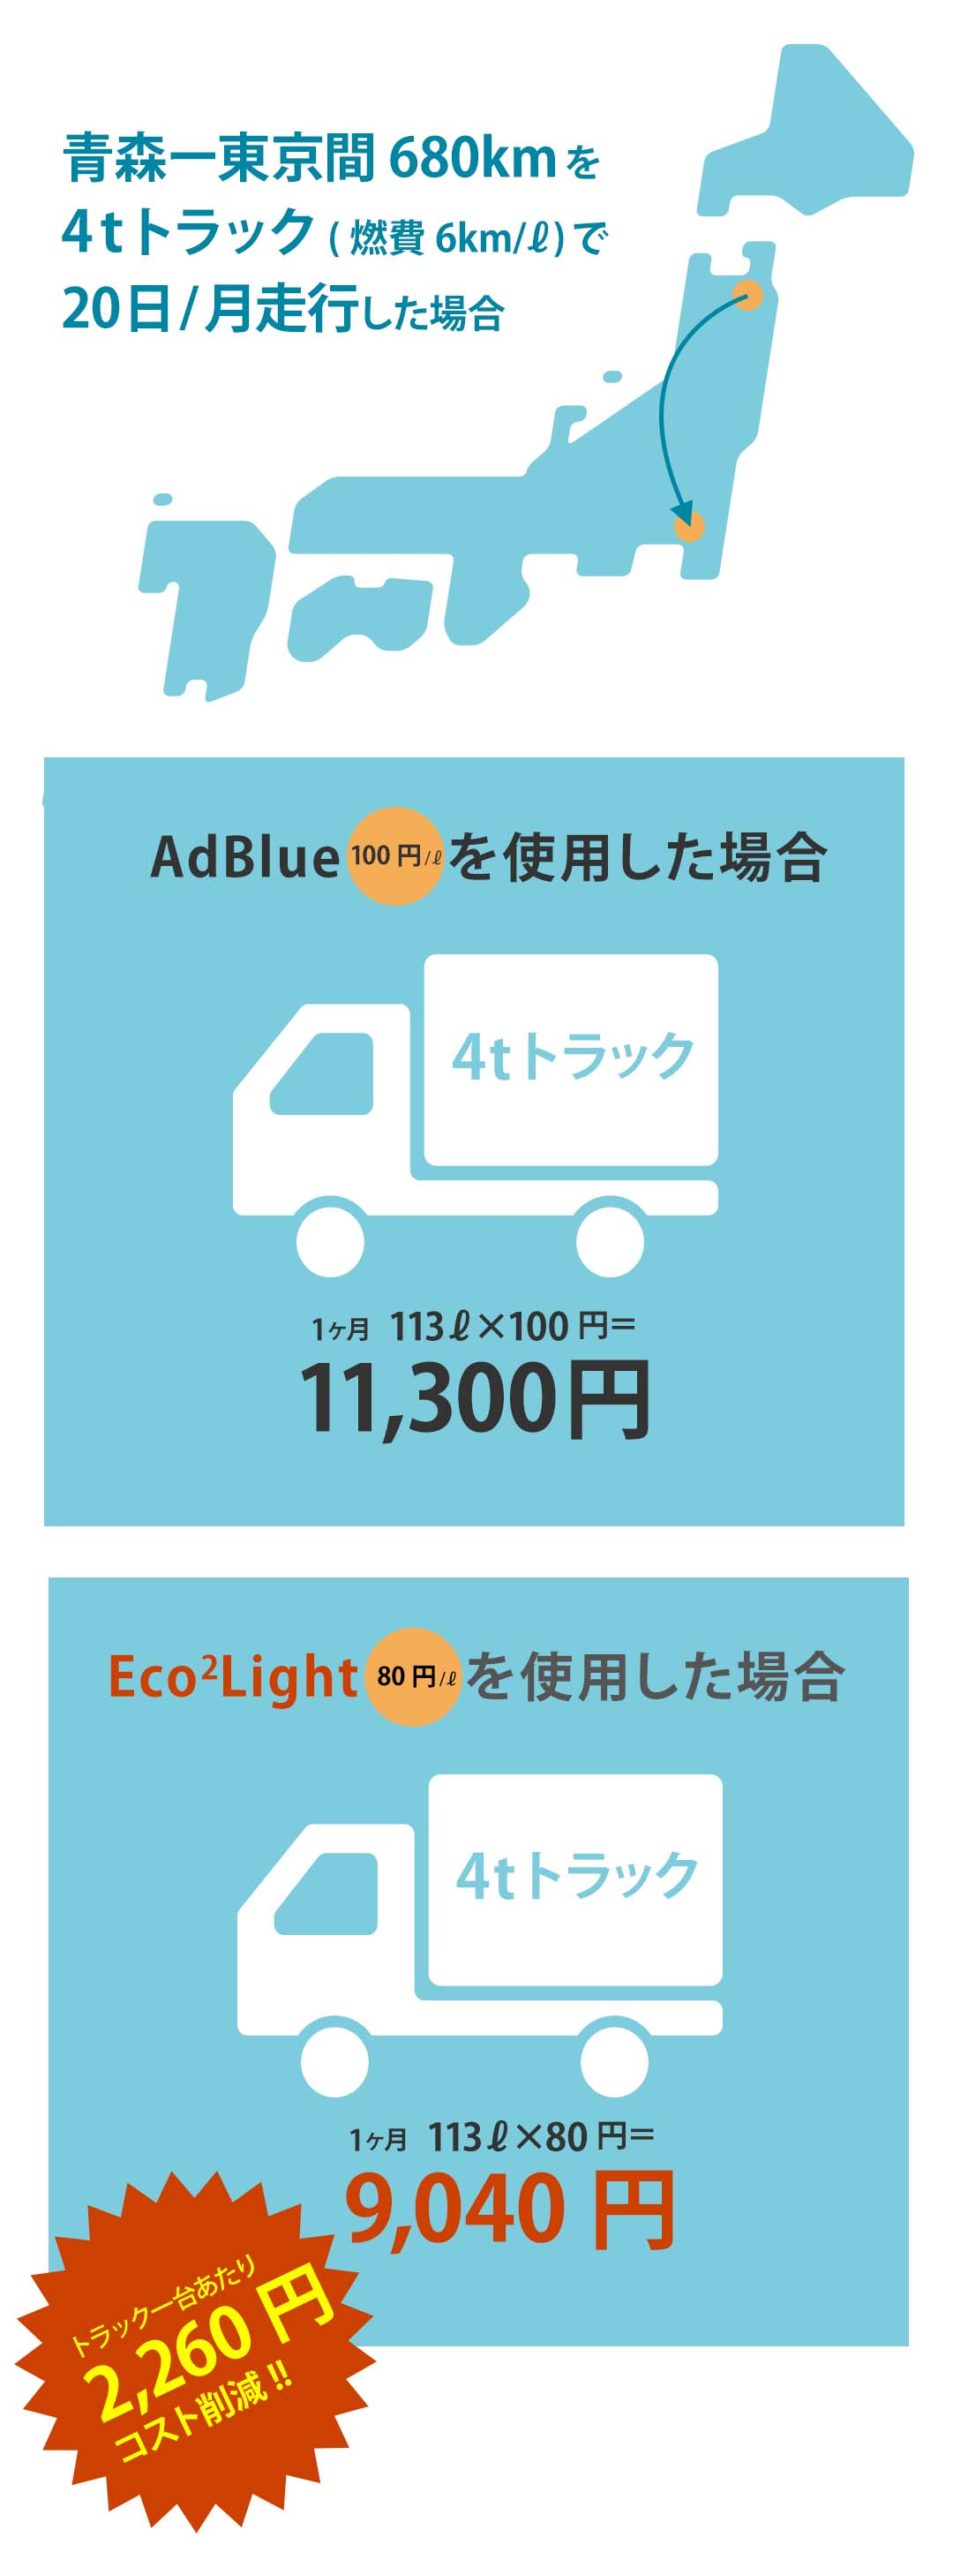 AdBlue®からEco2Lightにすると、大幅なコスト削減になります。